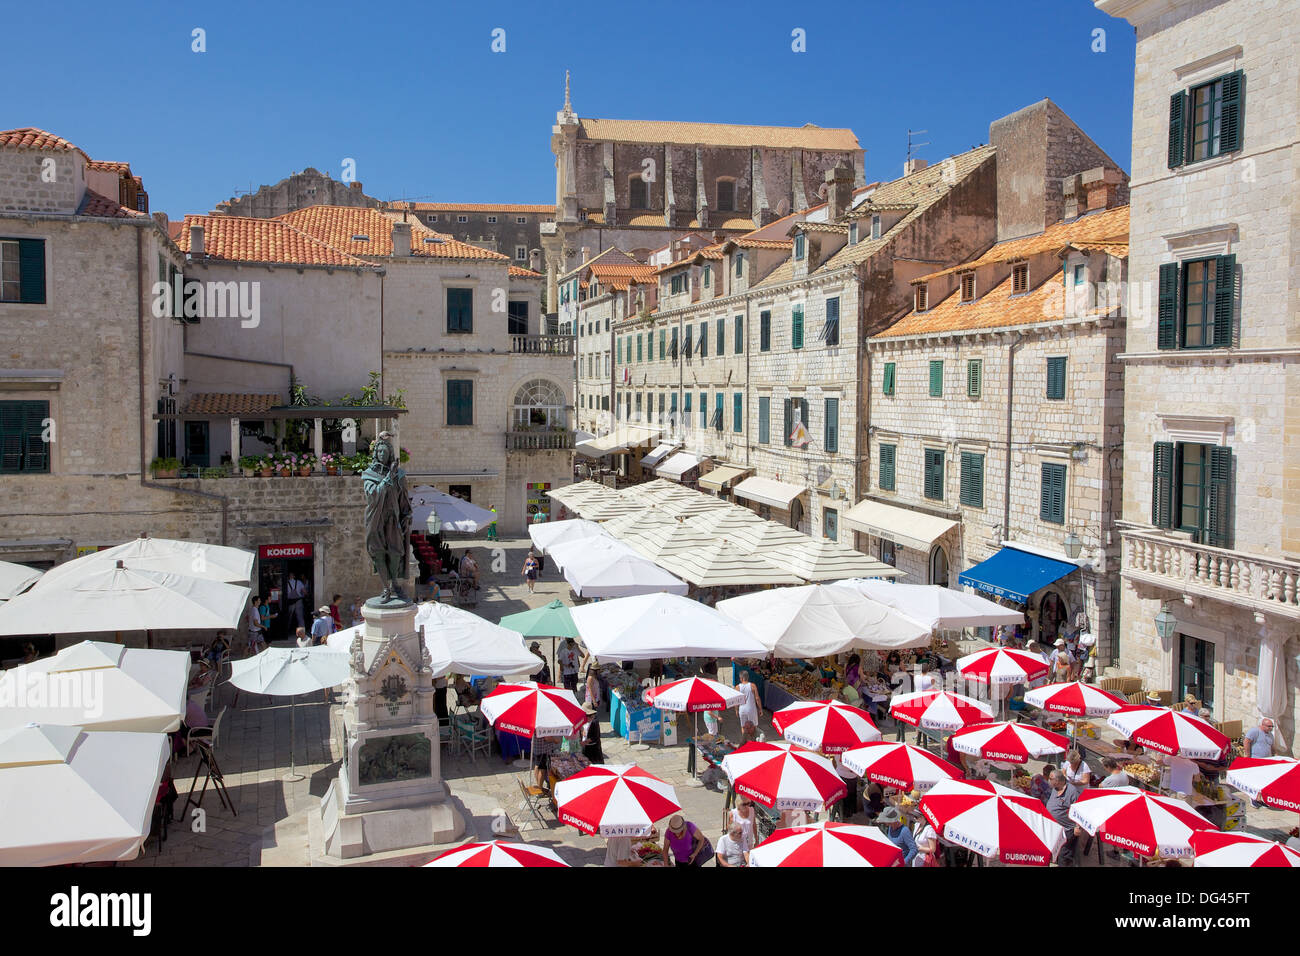 Market, Gunduliceeva Poljana, Dubrovnik, Dalmatia, Croatia, Europe Stock Photo